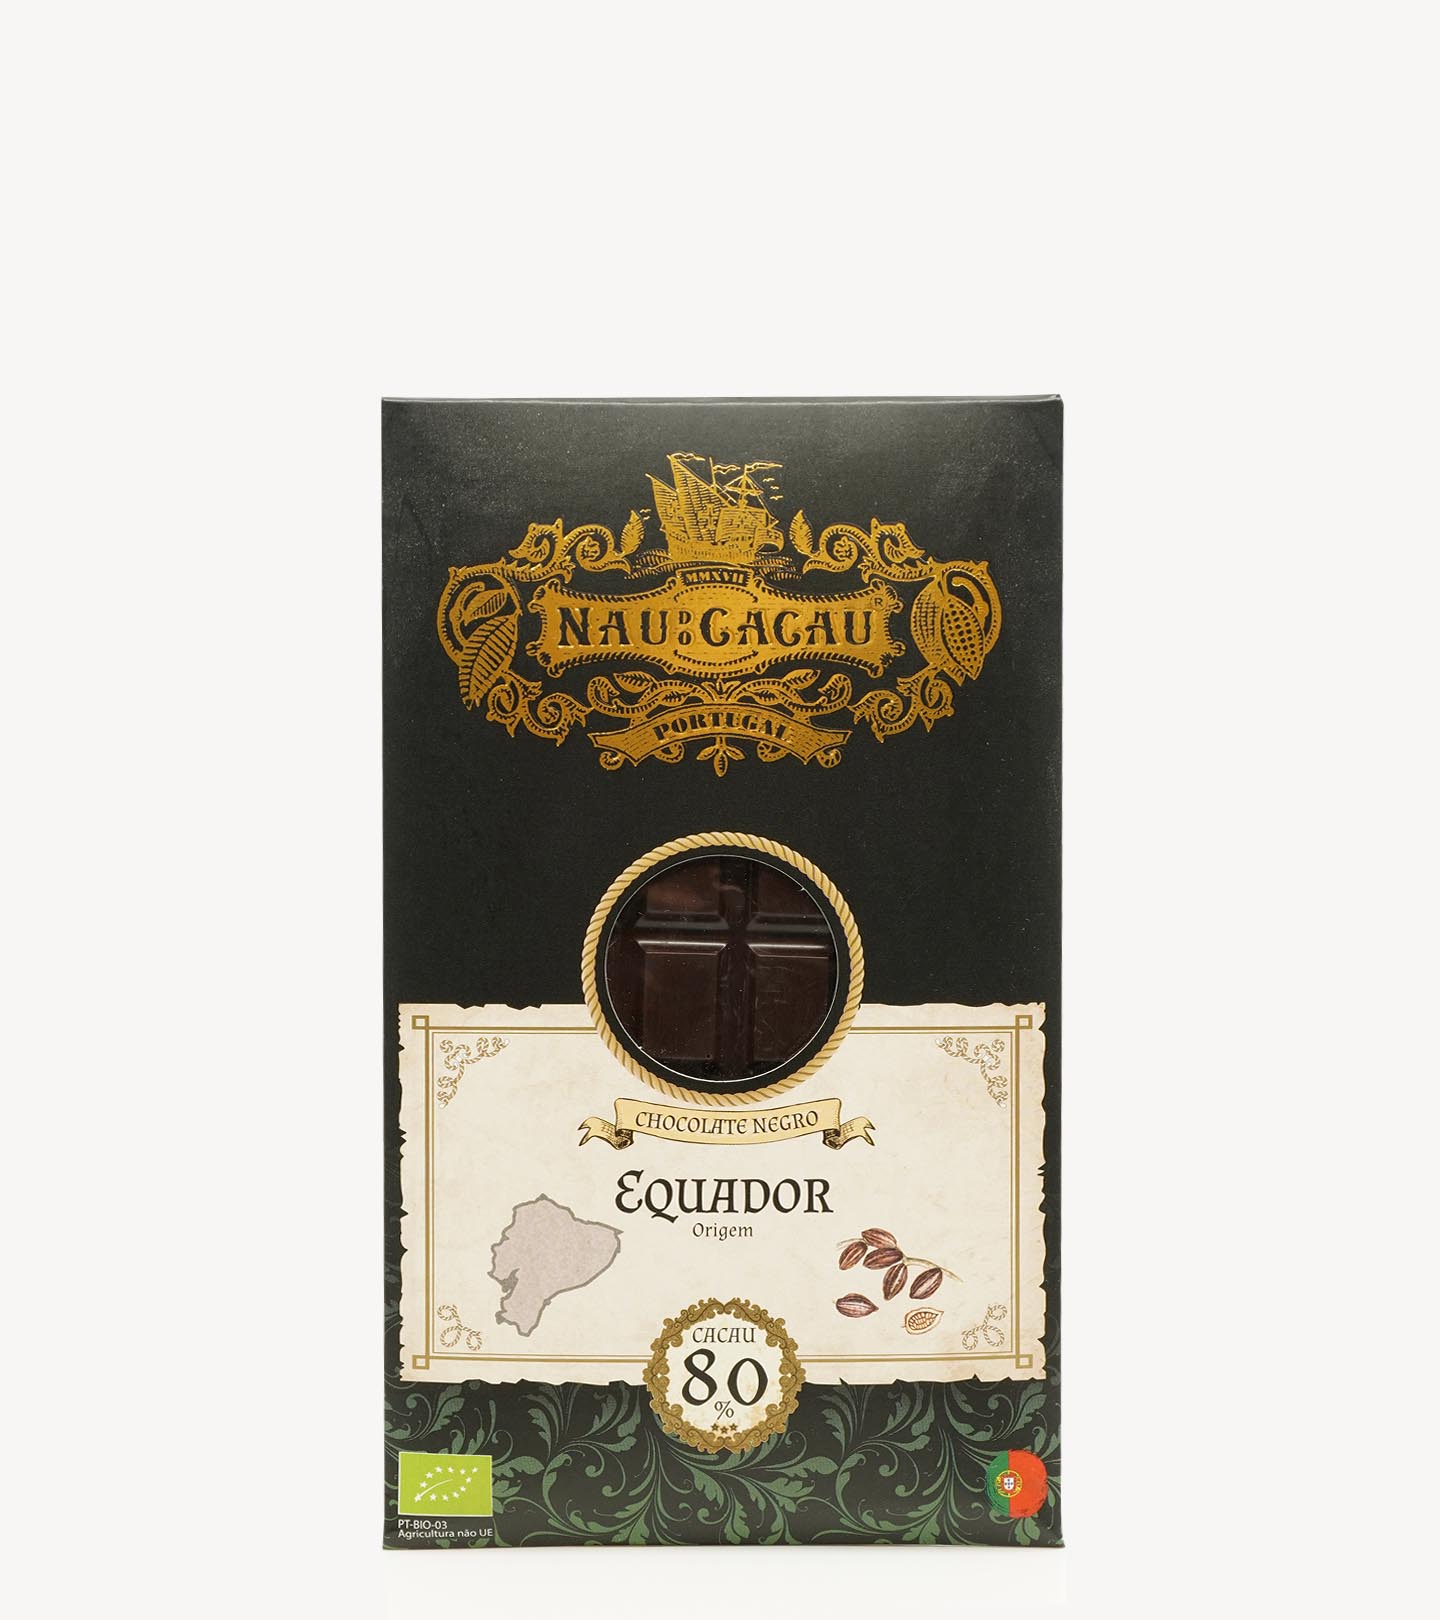 Tablete Chocolate Negro Biológico Equador Nau do Cacau  80g